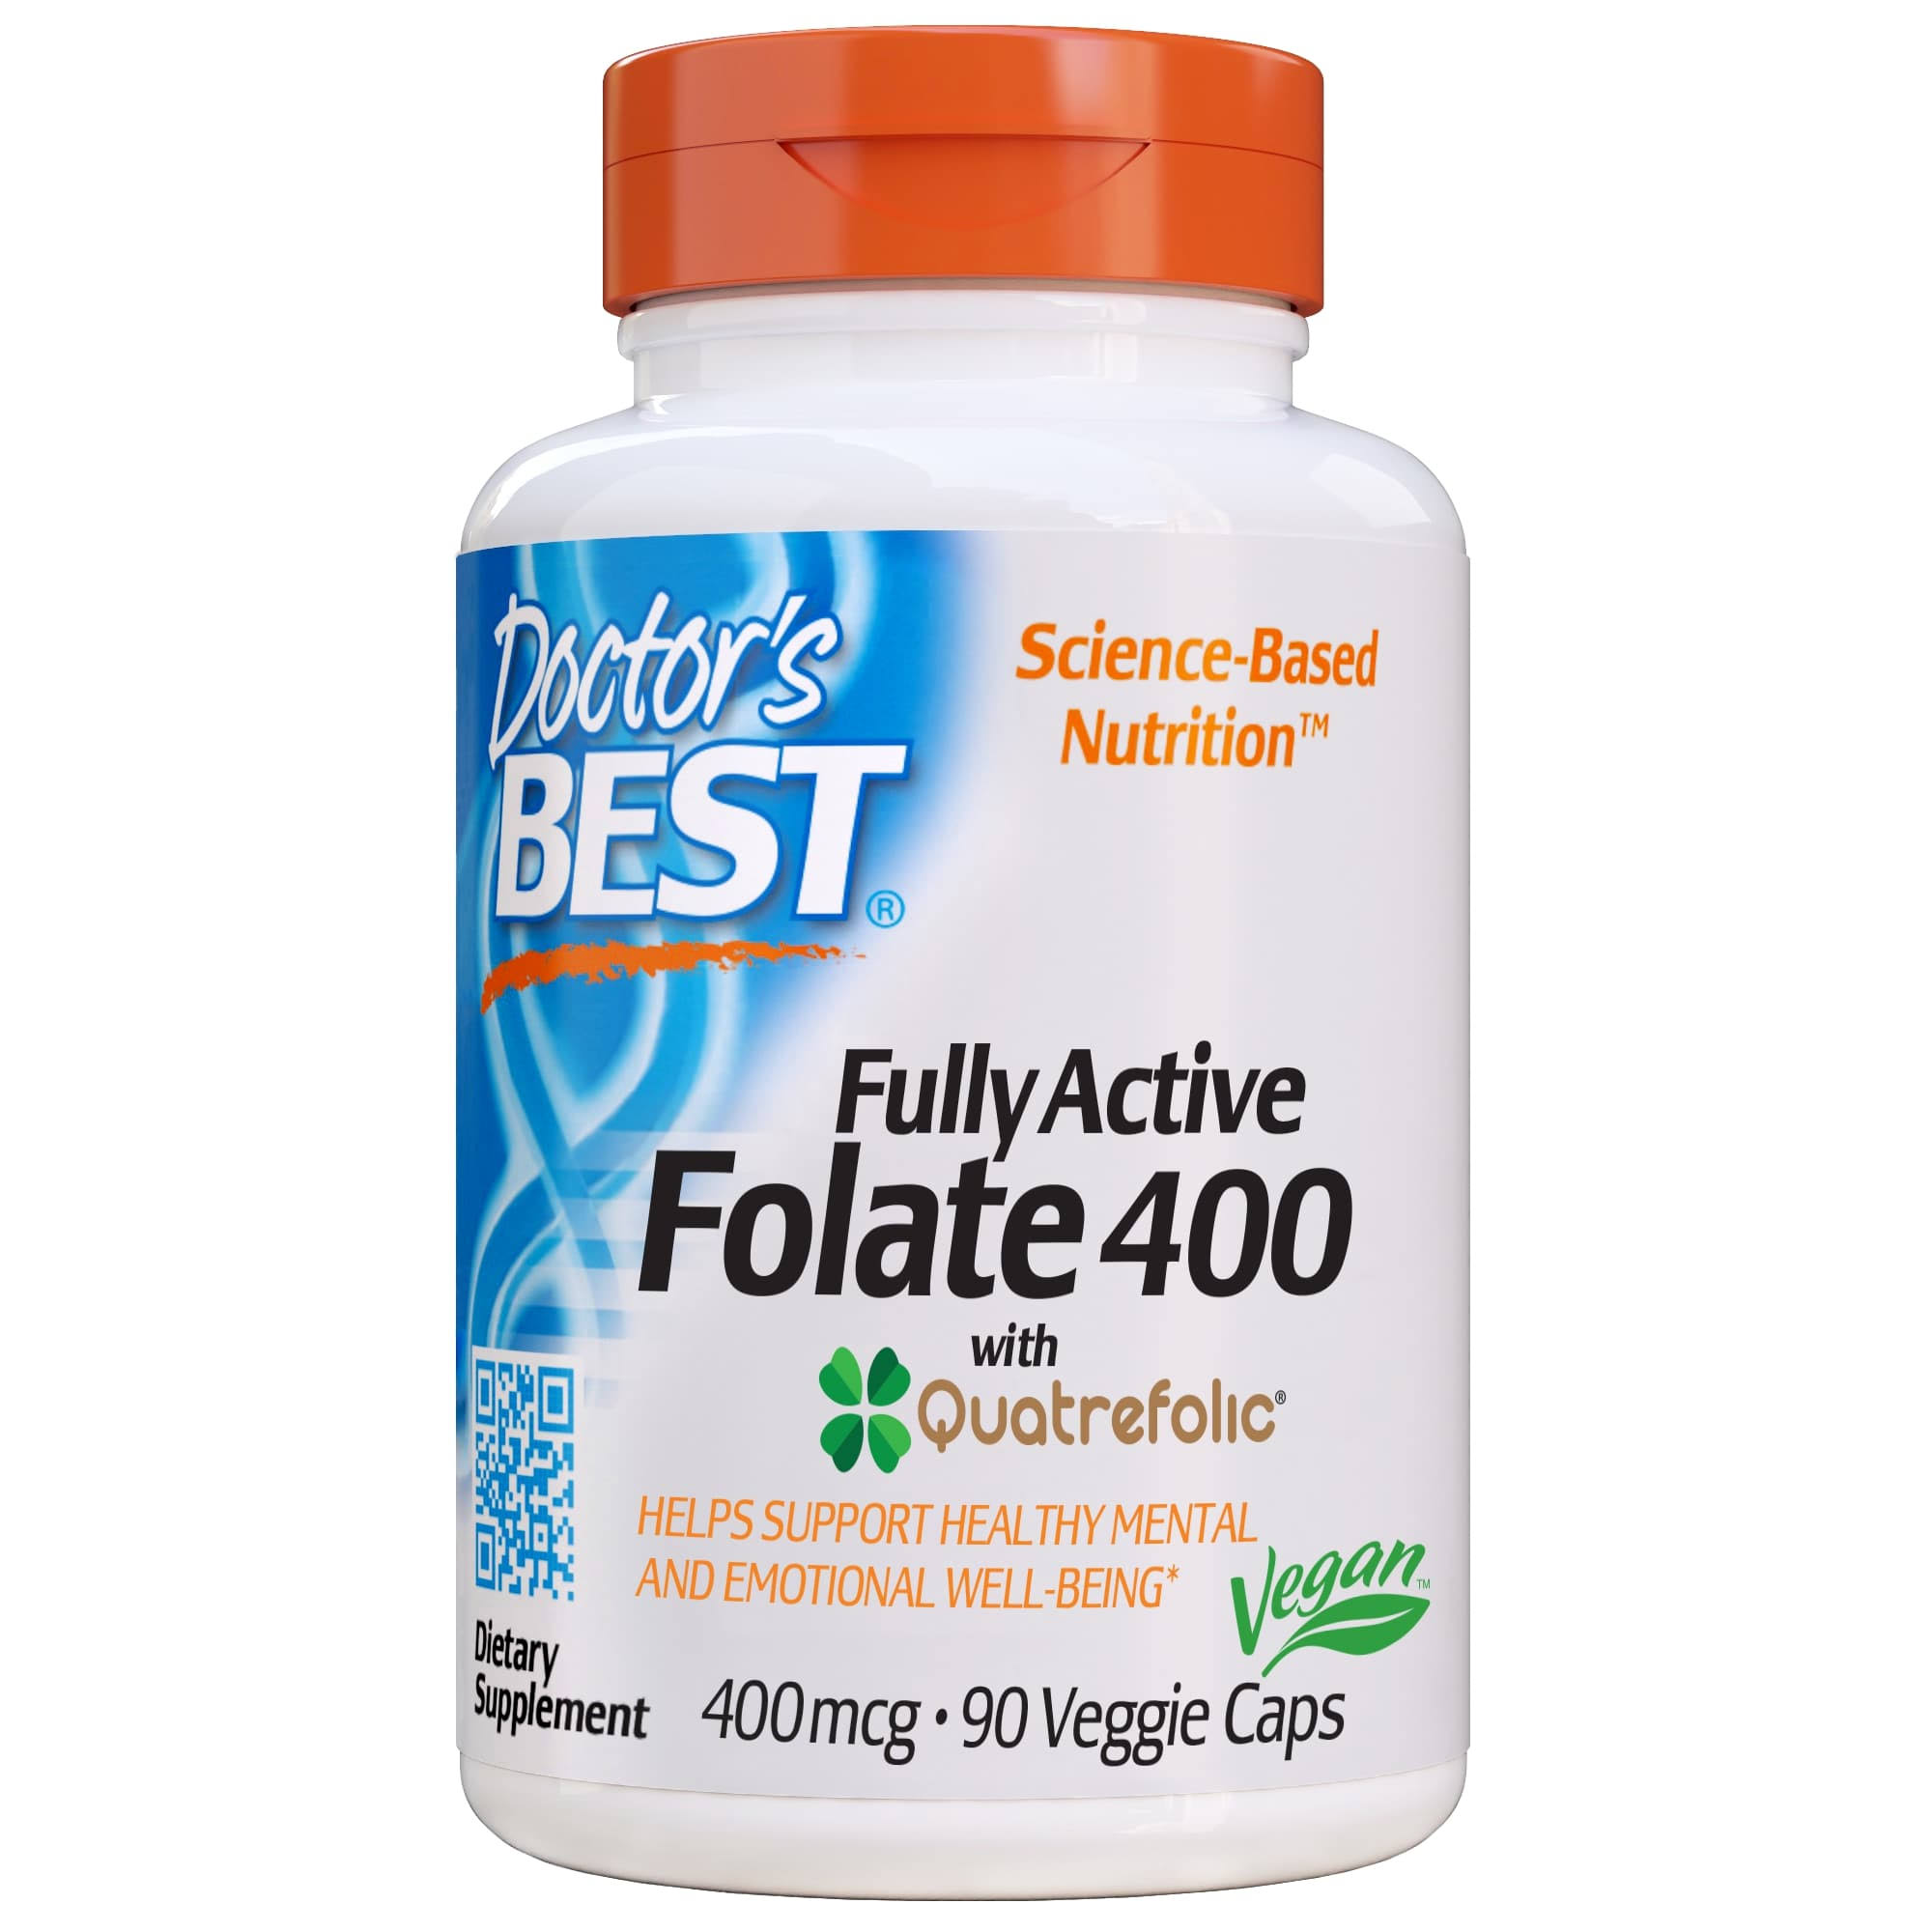 Doctors Best Fully Active Folate Featuring Quatrefolic - 400mcg, 90 Veggie Caps